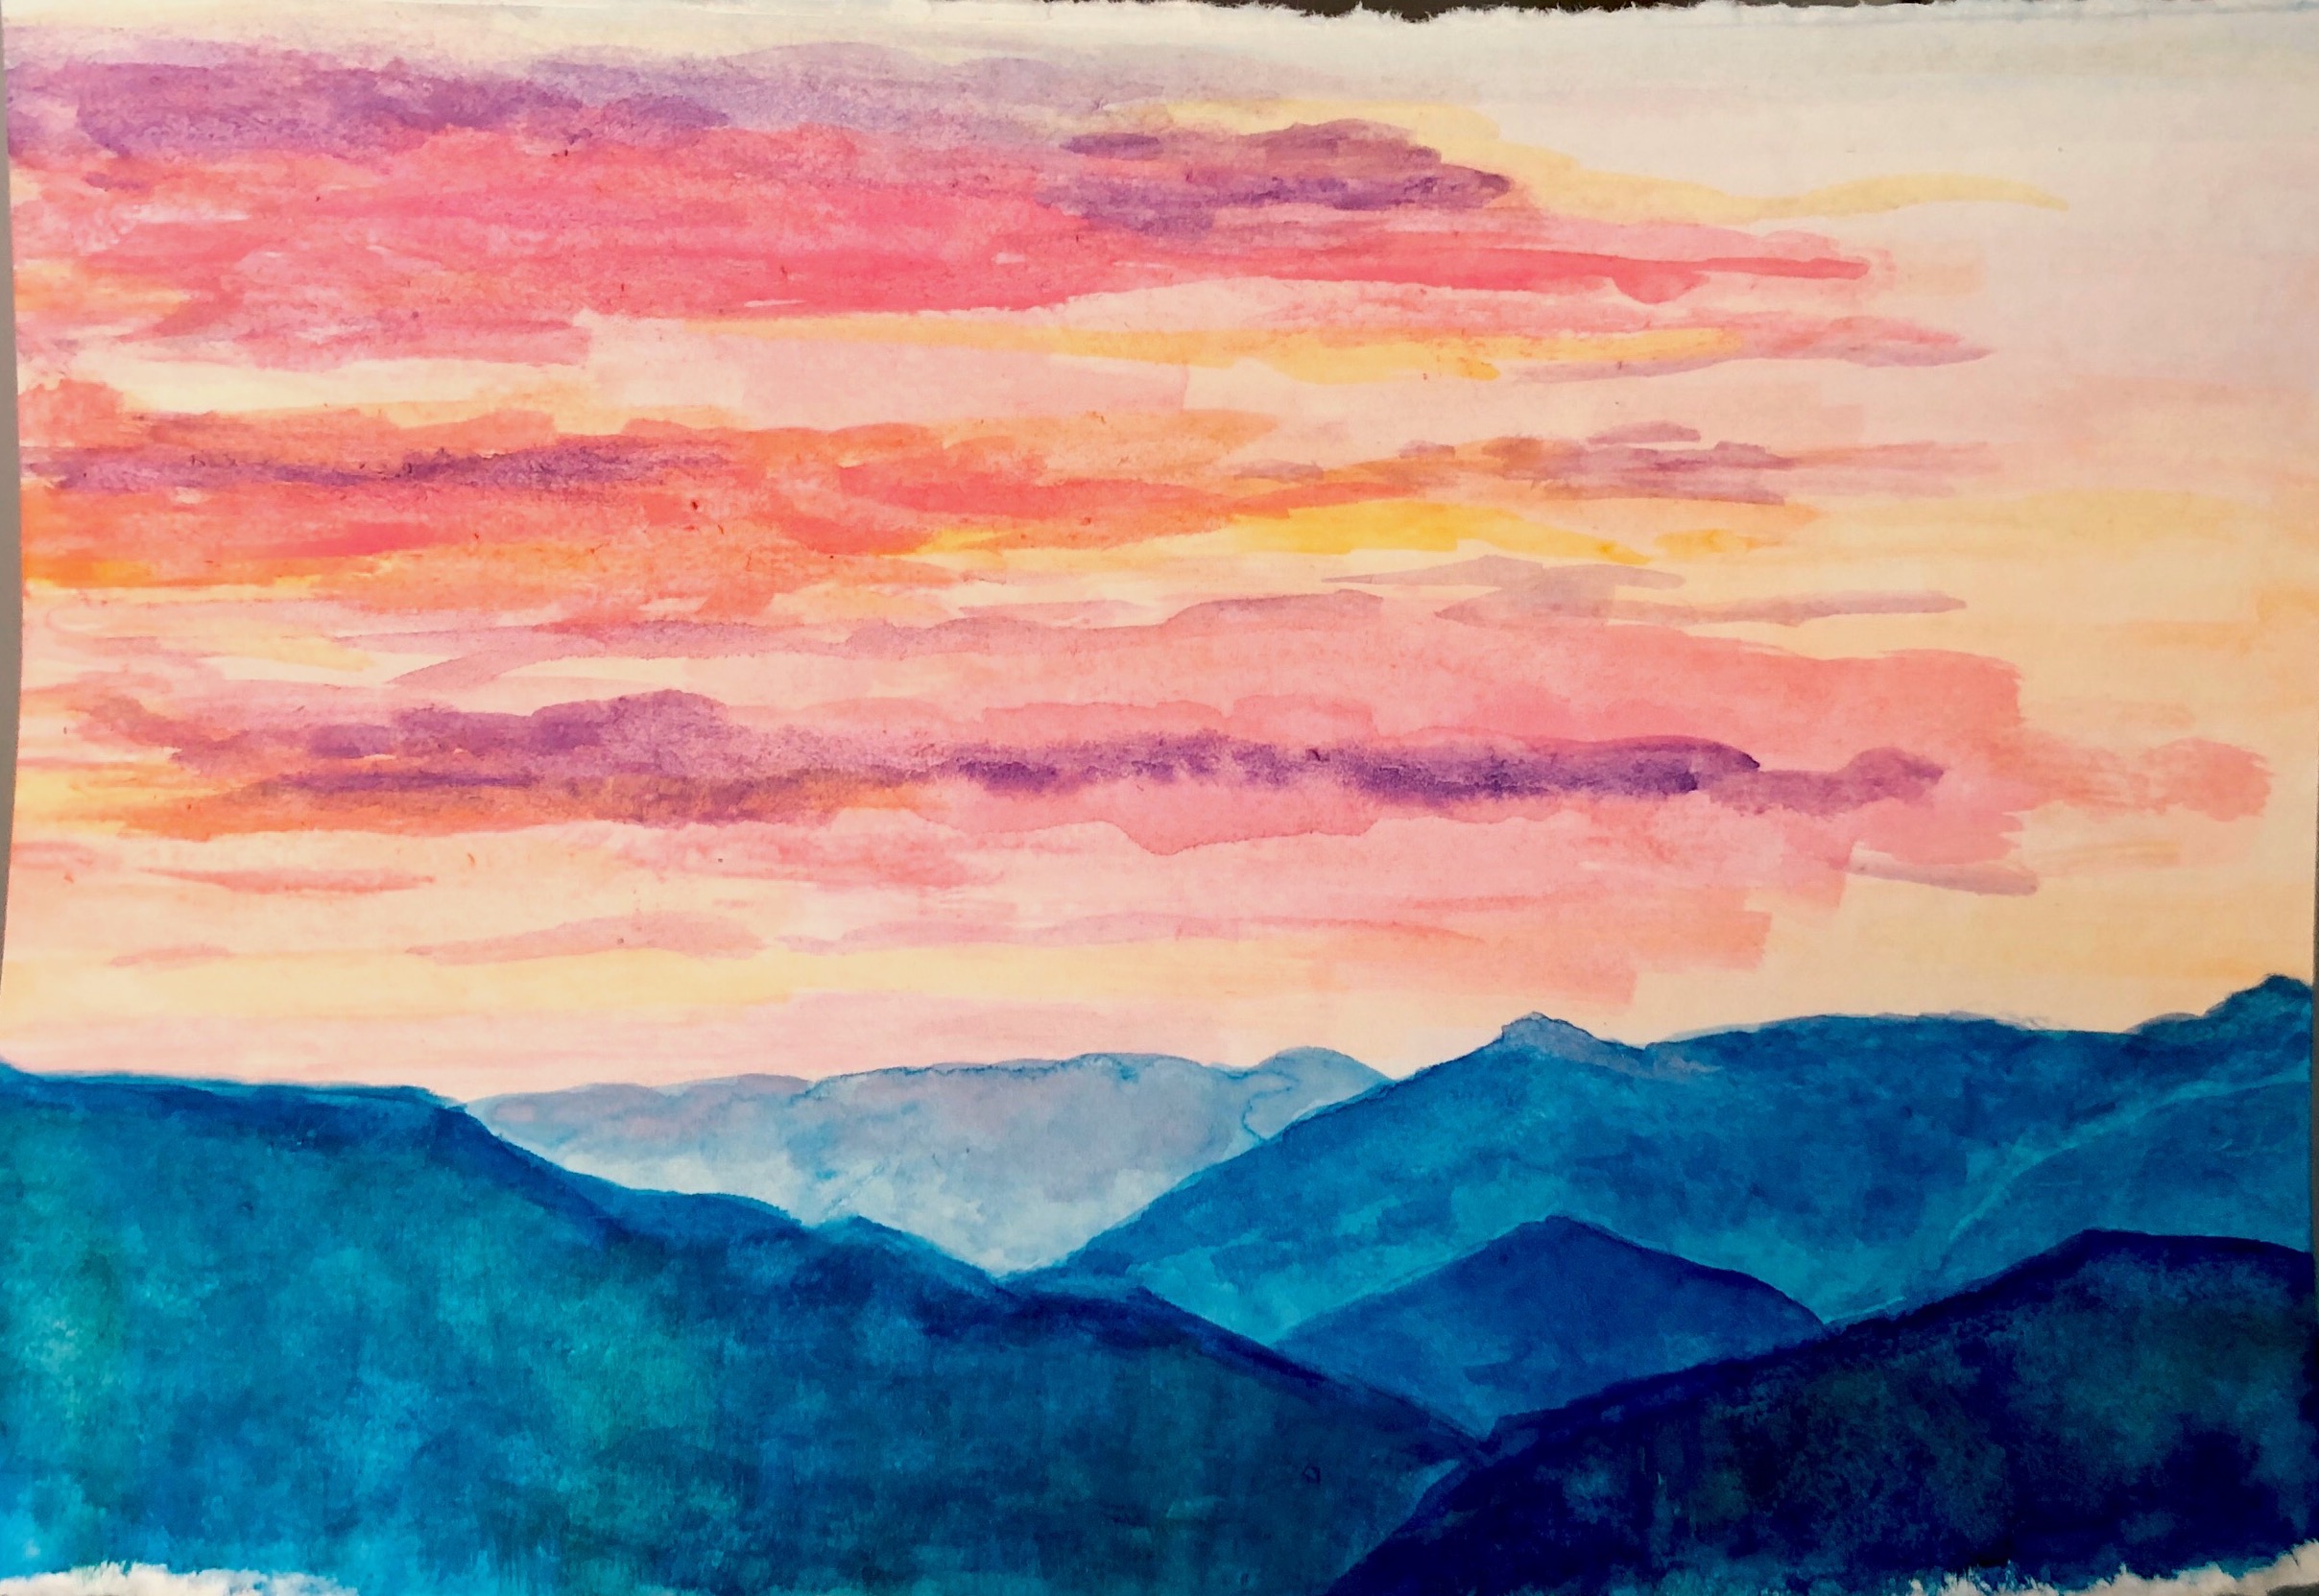 Shenandoah Sunsets (for My Sister)